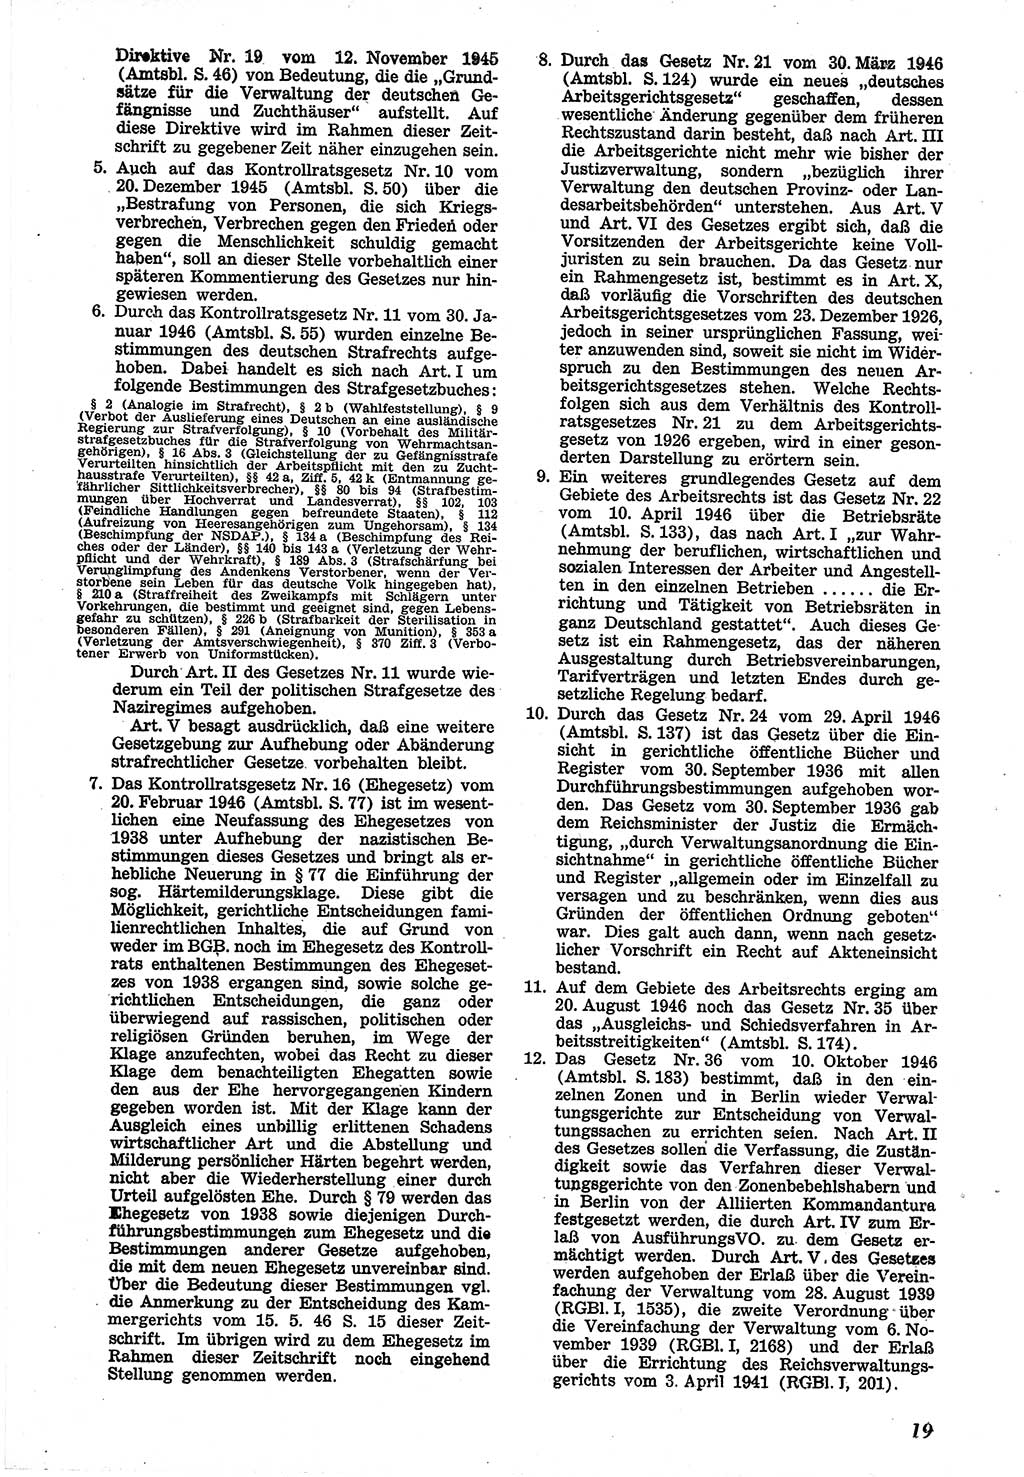 Neue Justiz (NJ), Zeitschrift für Recht und Rechtswissenschaft [Sowjetische Besatzungszone (SBZ) Deutschland], 1. Jahrgang 1947, Seite 19 (NJ SBZ Dtl. 1947, S. 19)